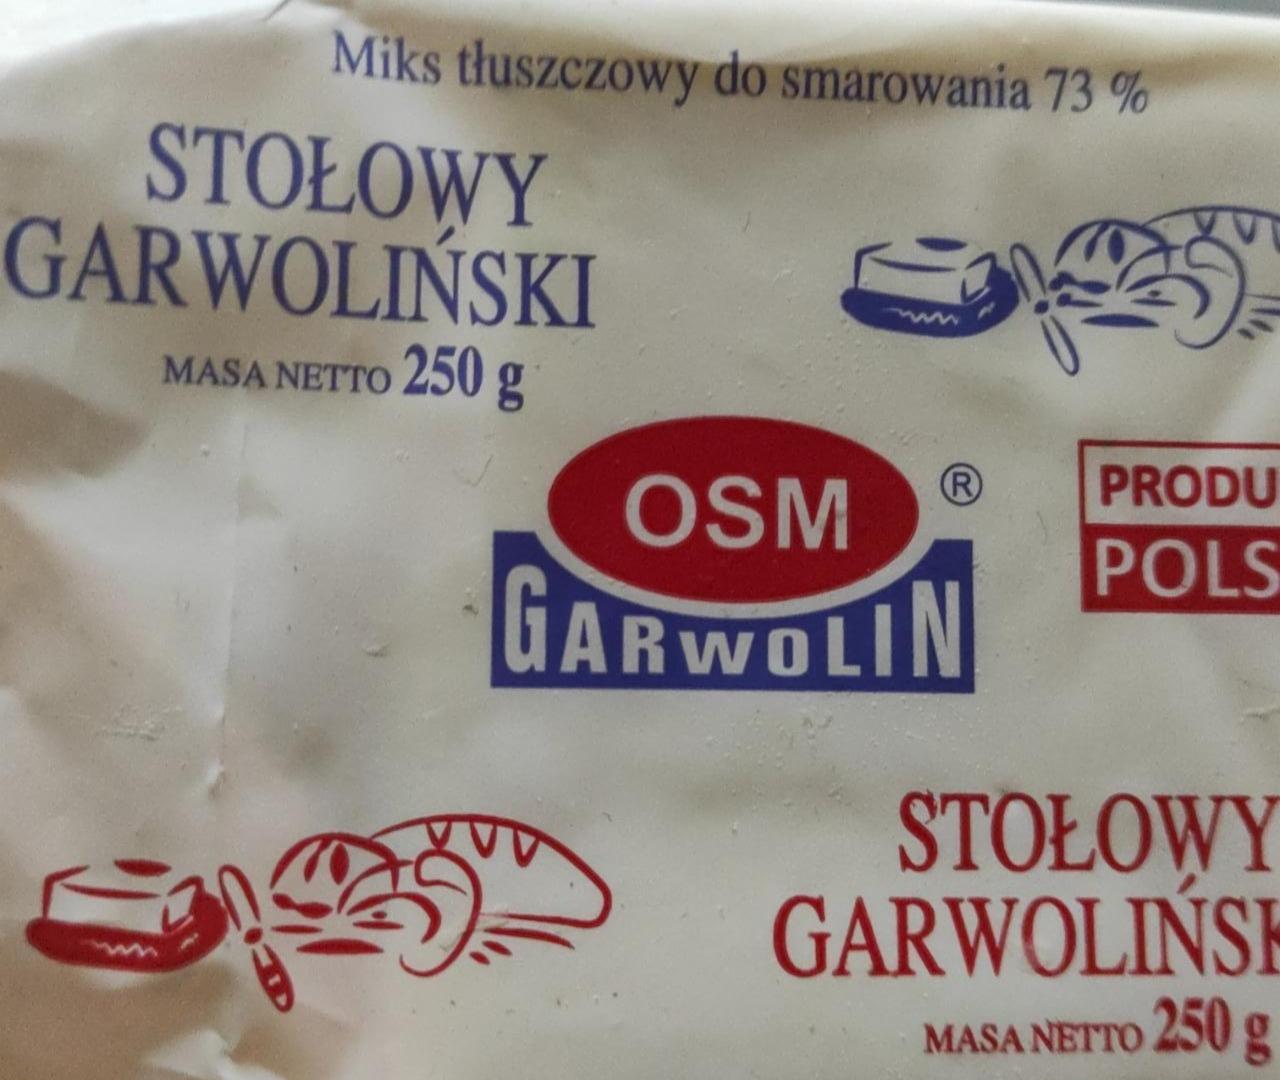 Zdjęcia - Masło stołowy garlowiński OSM Garwolin